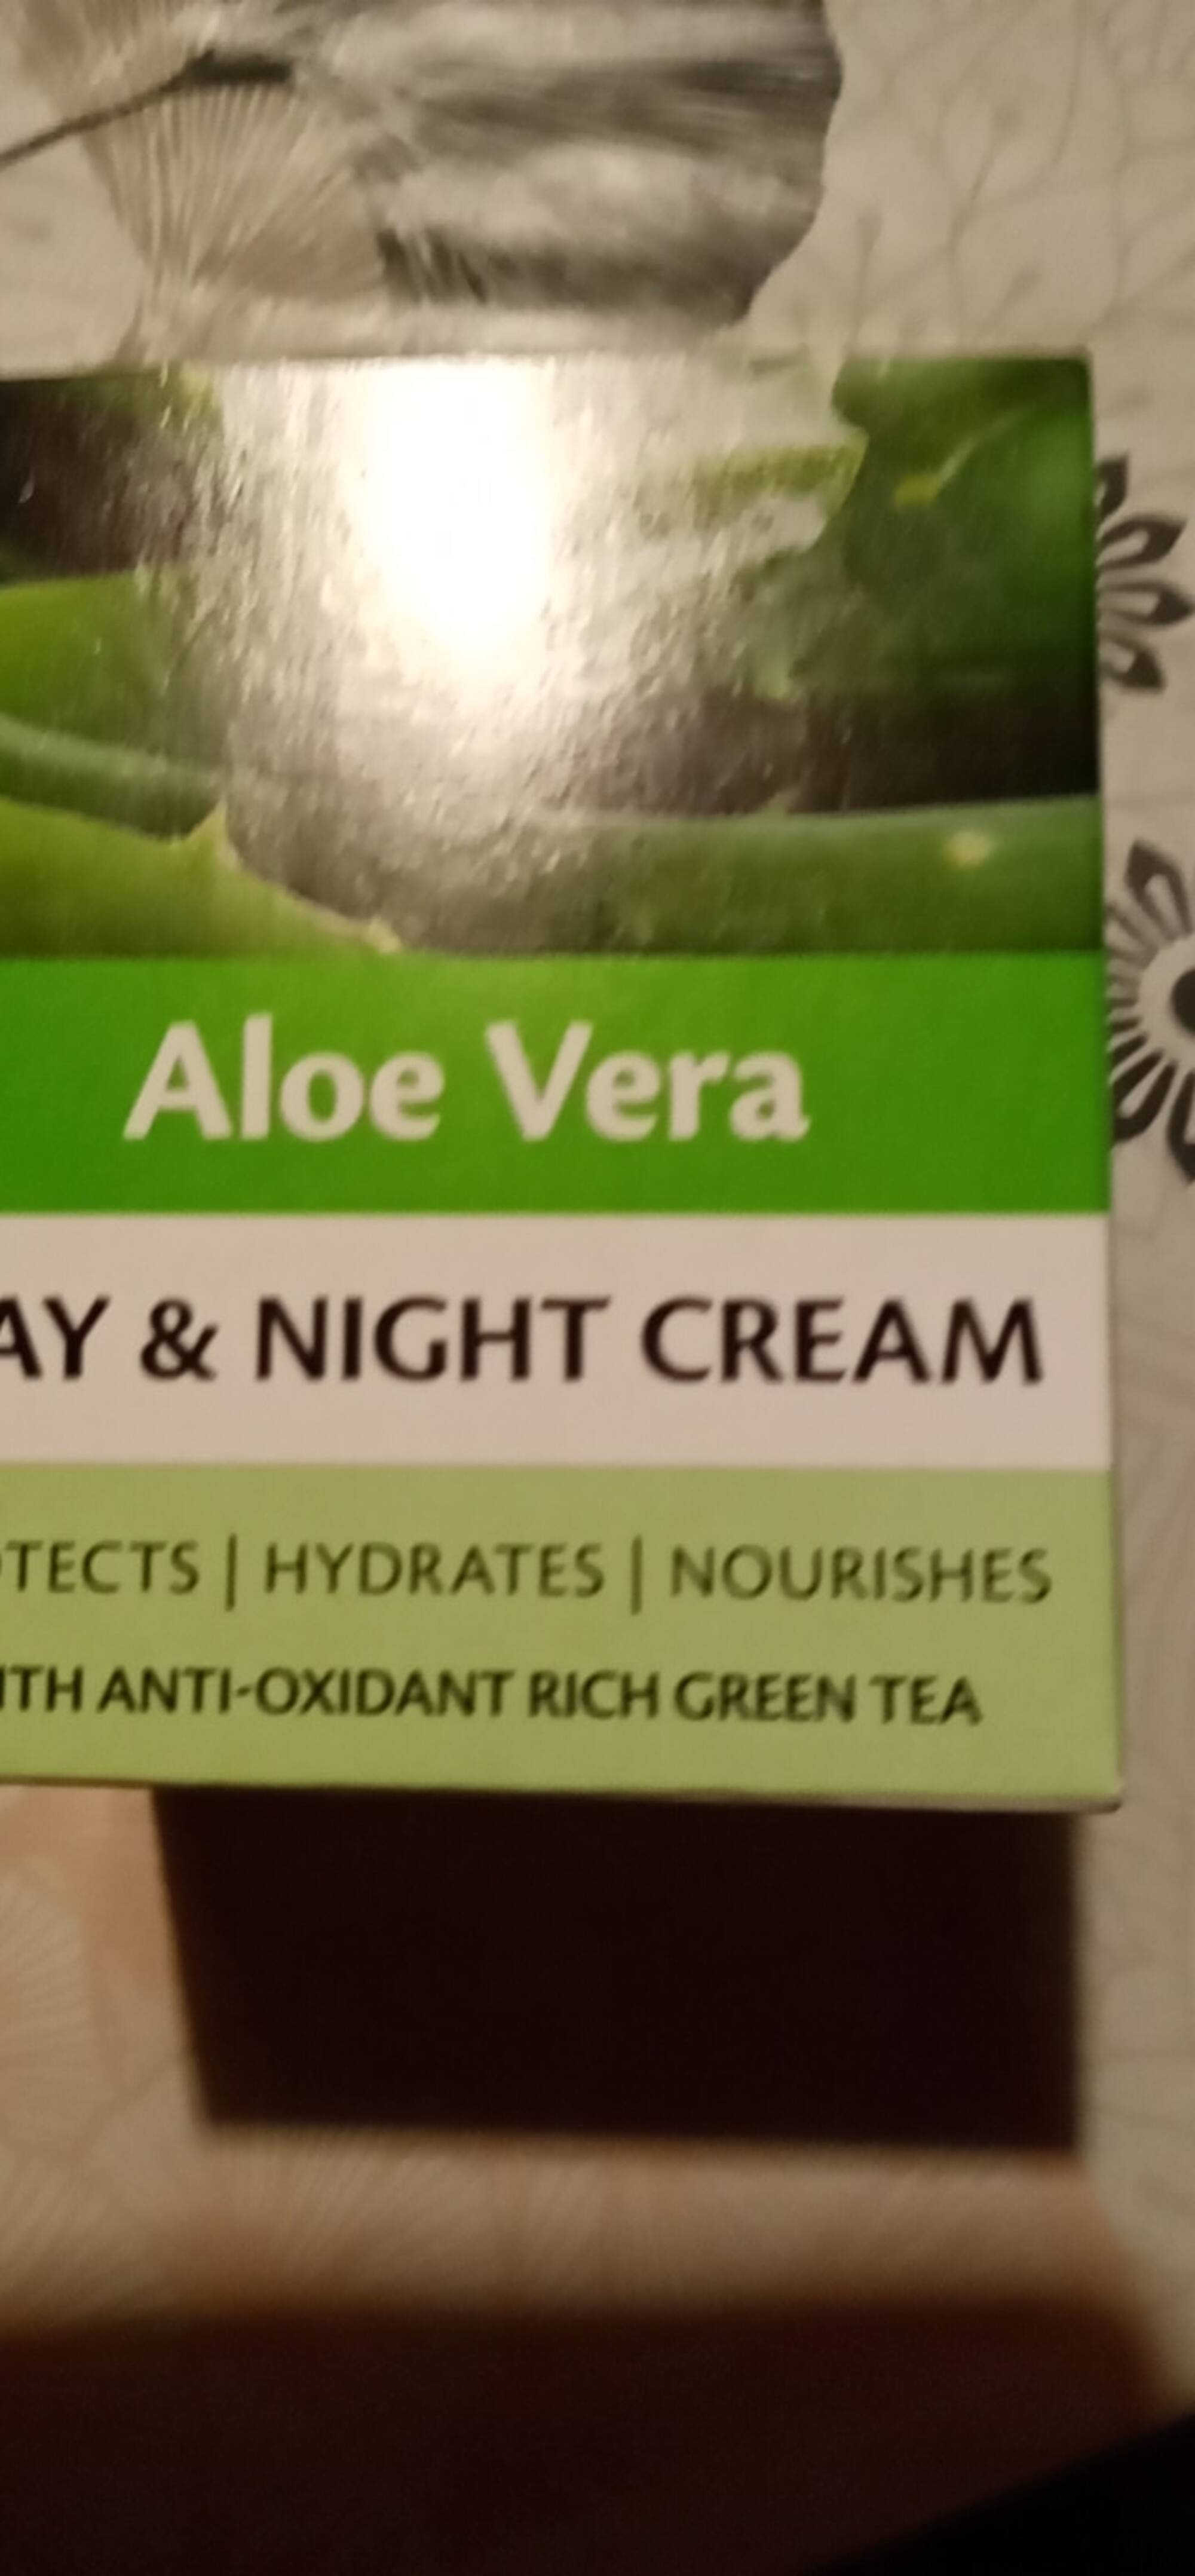 MASCOT EUROPE - Aloe vera - Day & night cream 